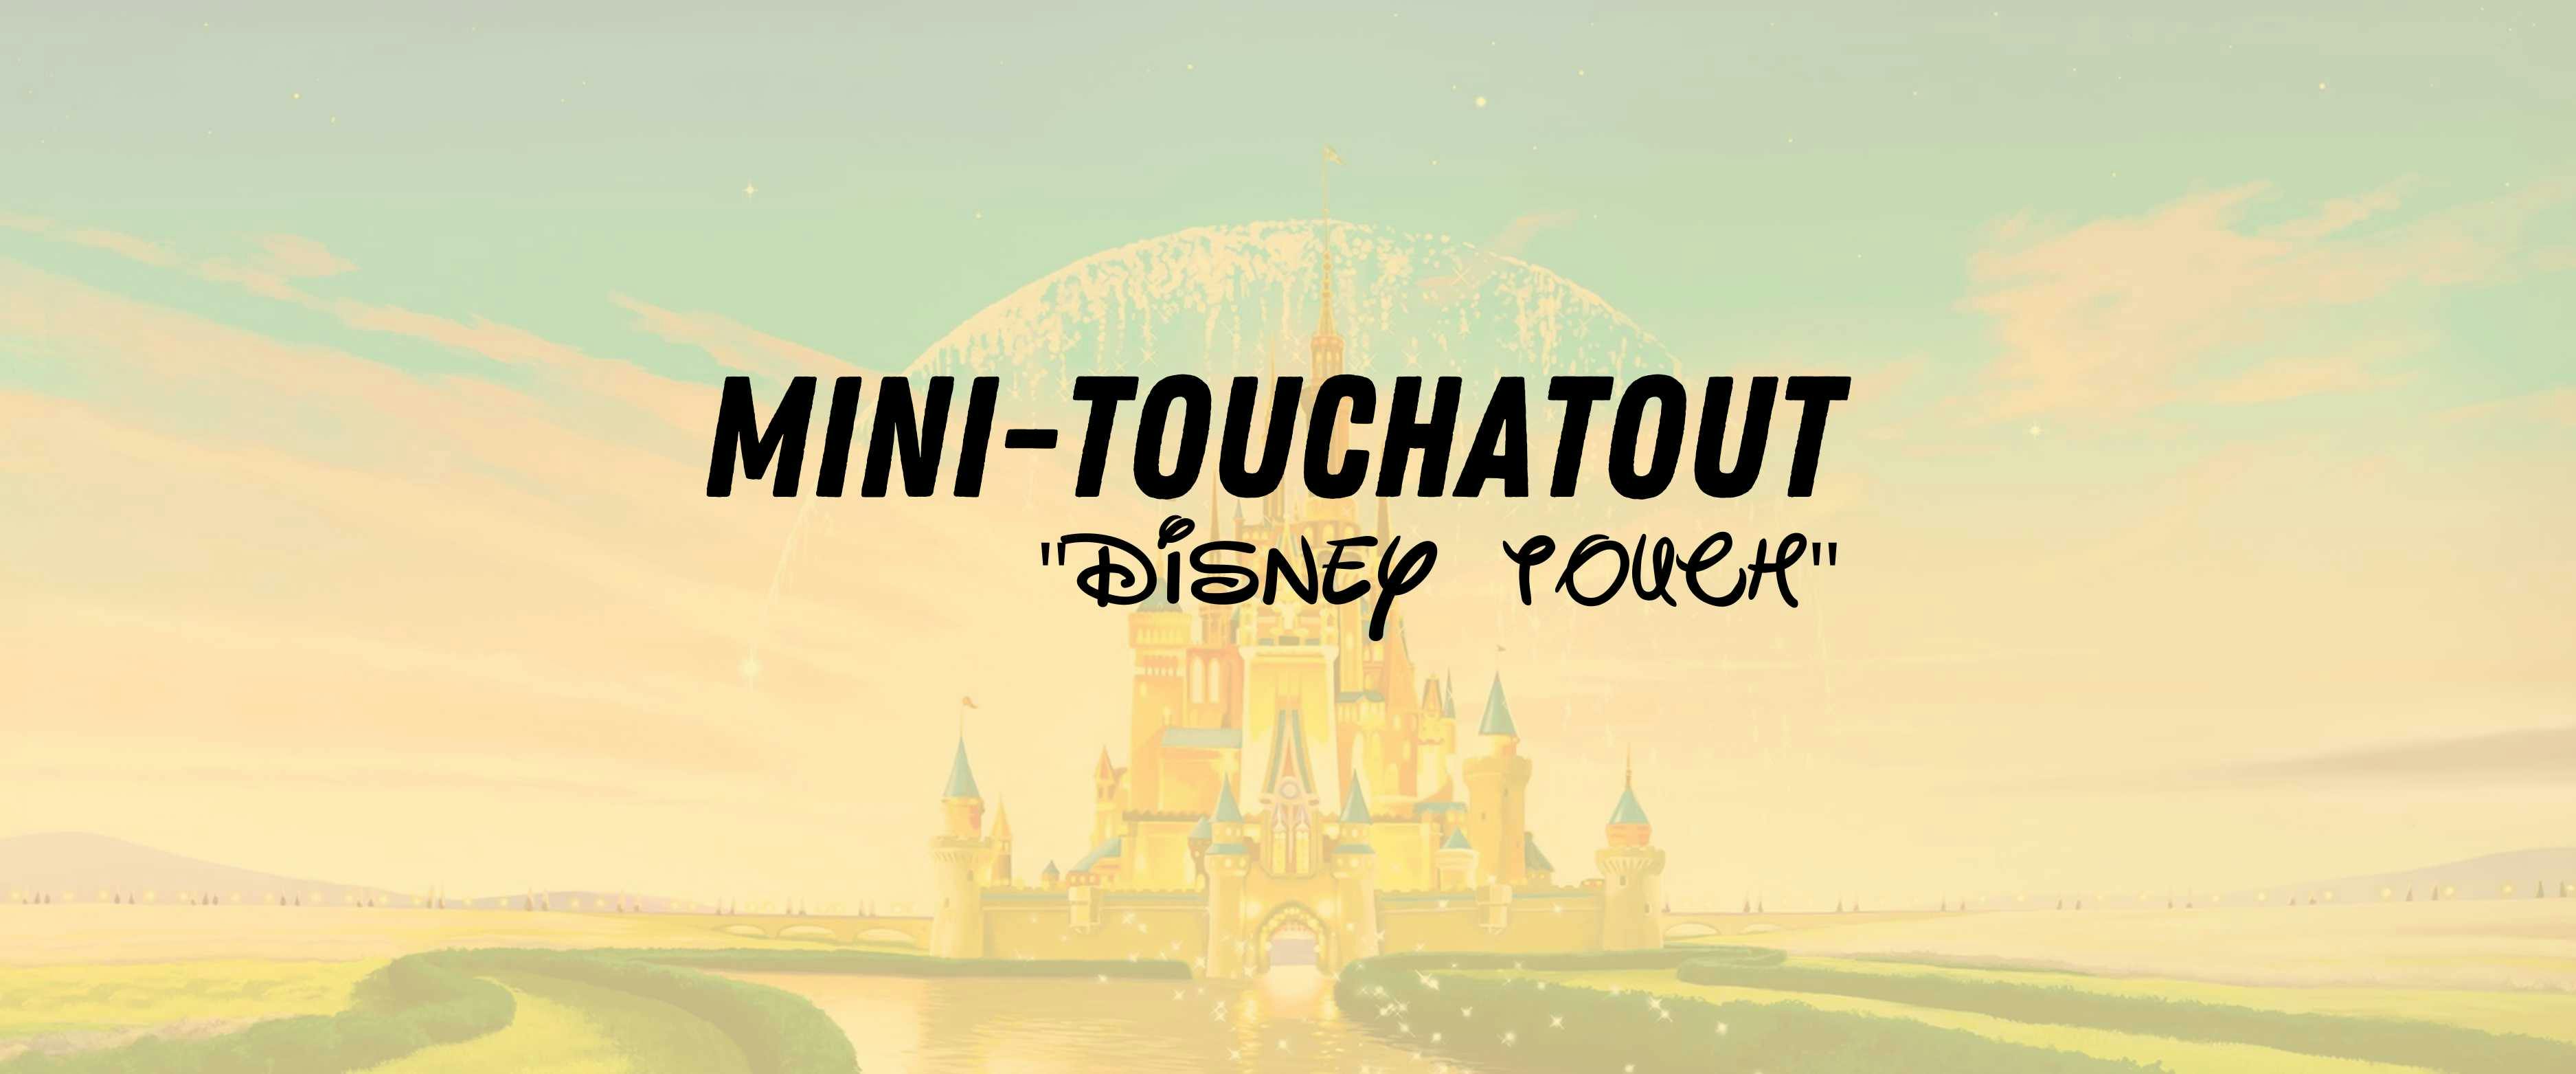 Détente S2 : Mini Touchatout "Spécial Disney"